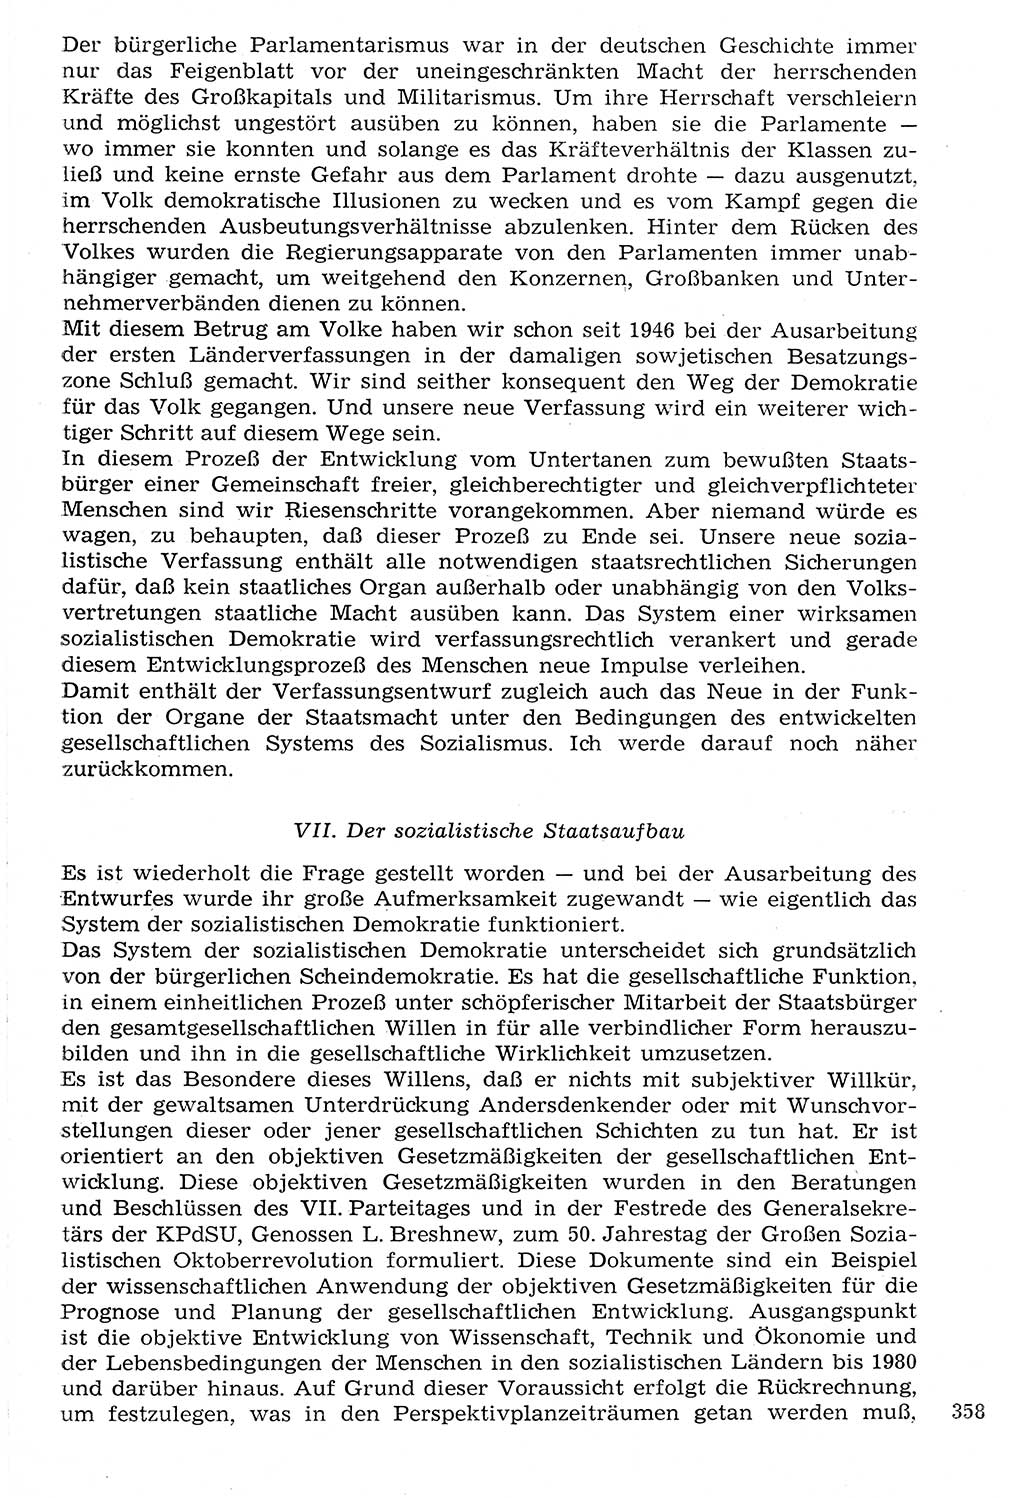 Staat und Recht (StuR), 17. Jahrgang [Deutsche Demokratische Republik (DDR)] 1968, Seite 358 (StuR DDR 1968, S. 358)